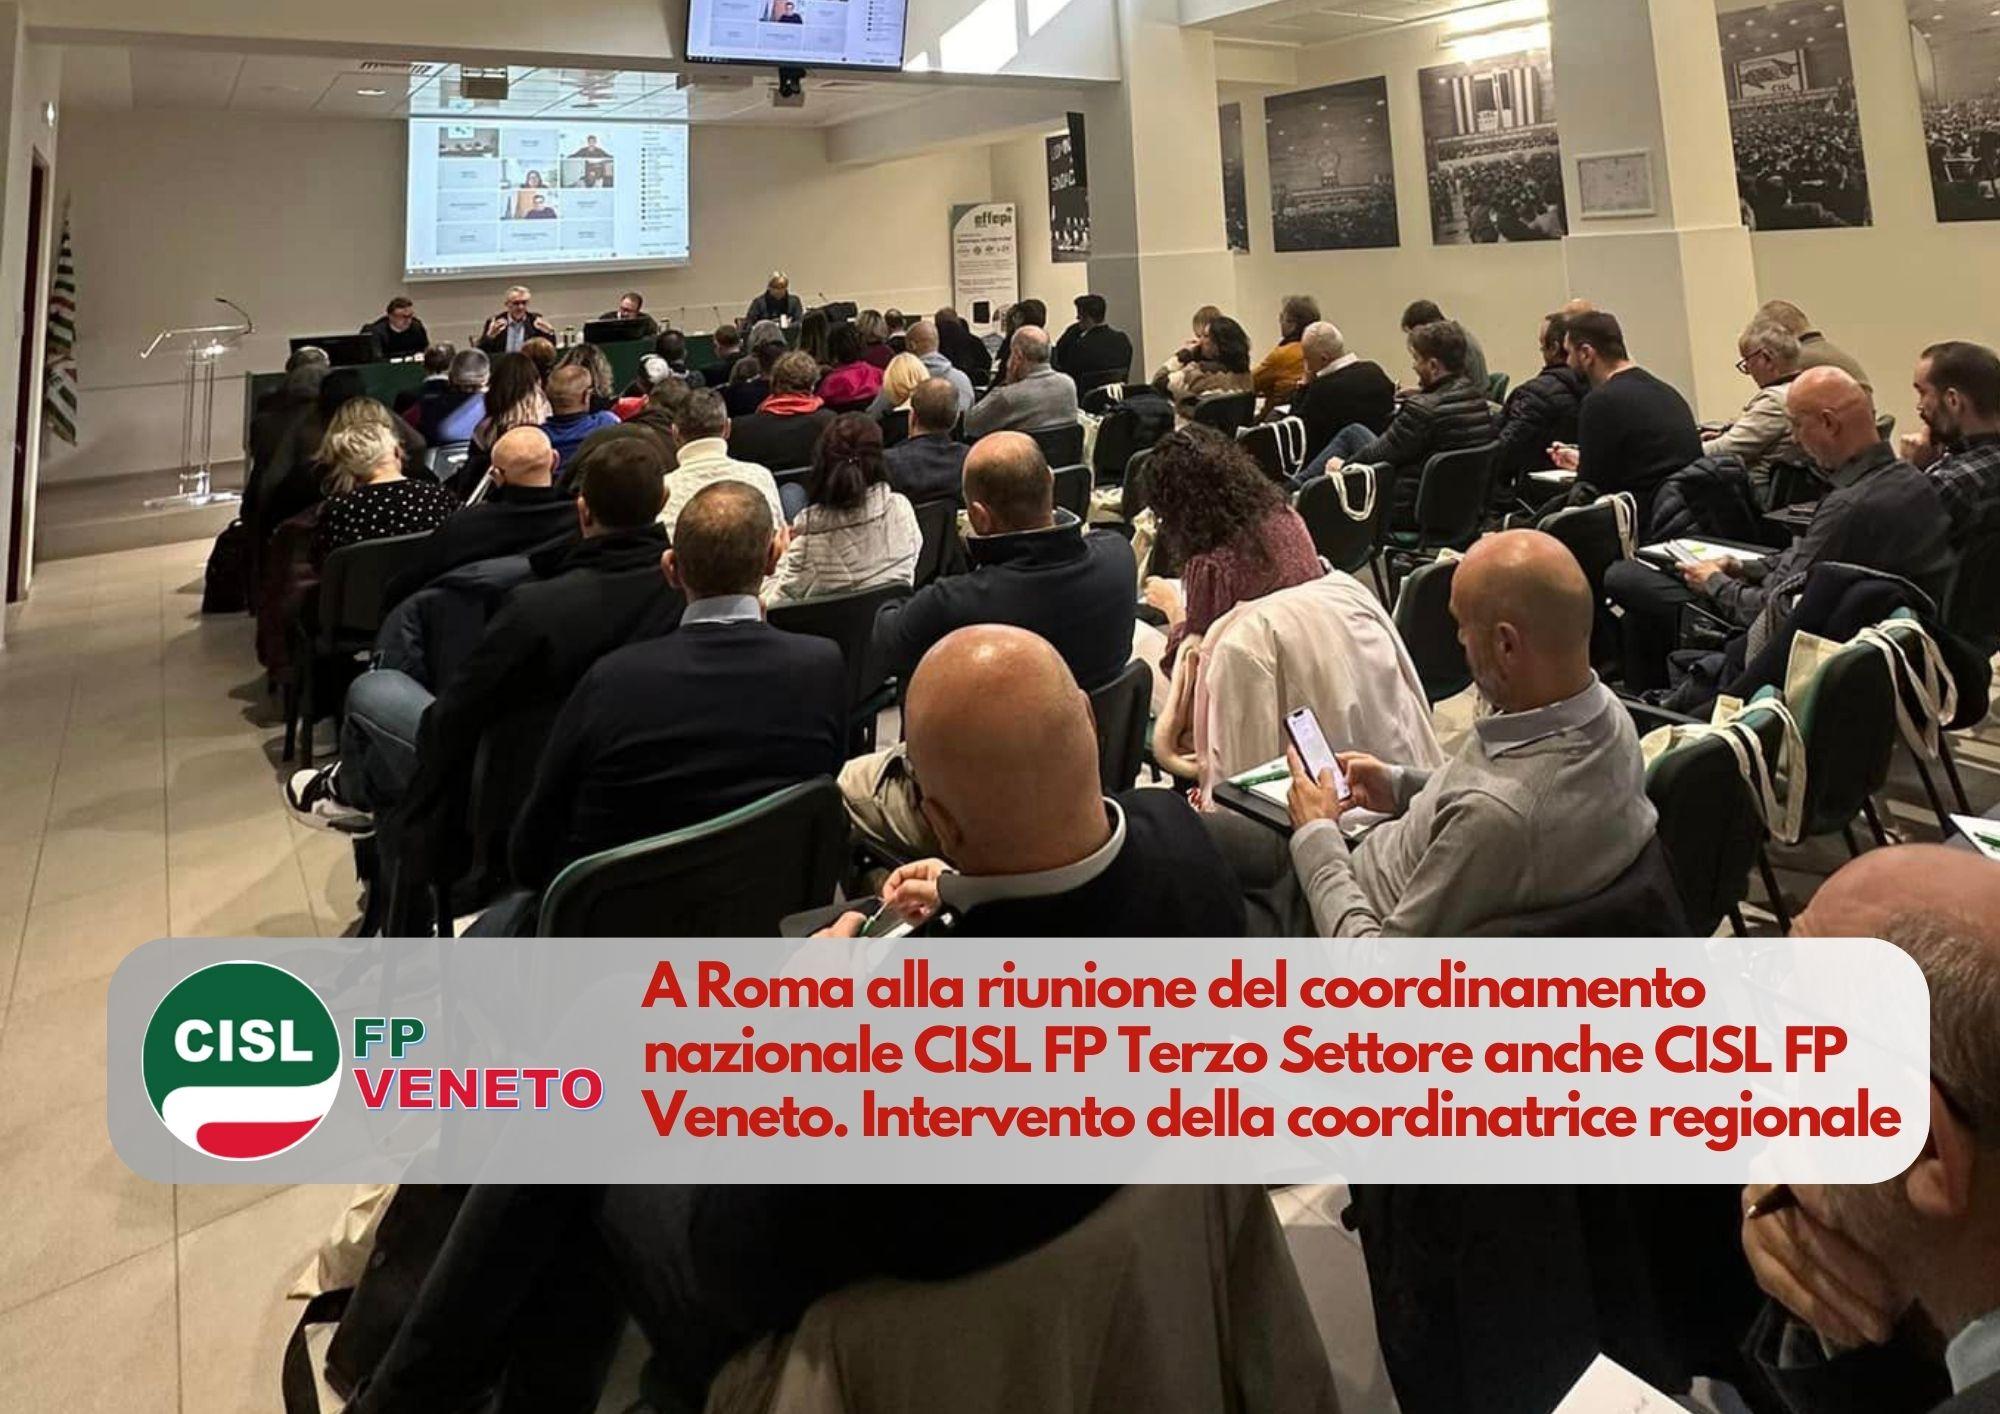 CISL FP Veneto. A Roma alla riunione del coordinamento nazionale CISL FP Terzo Settore anche CISL FP Veneto